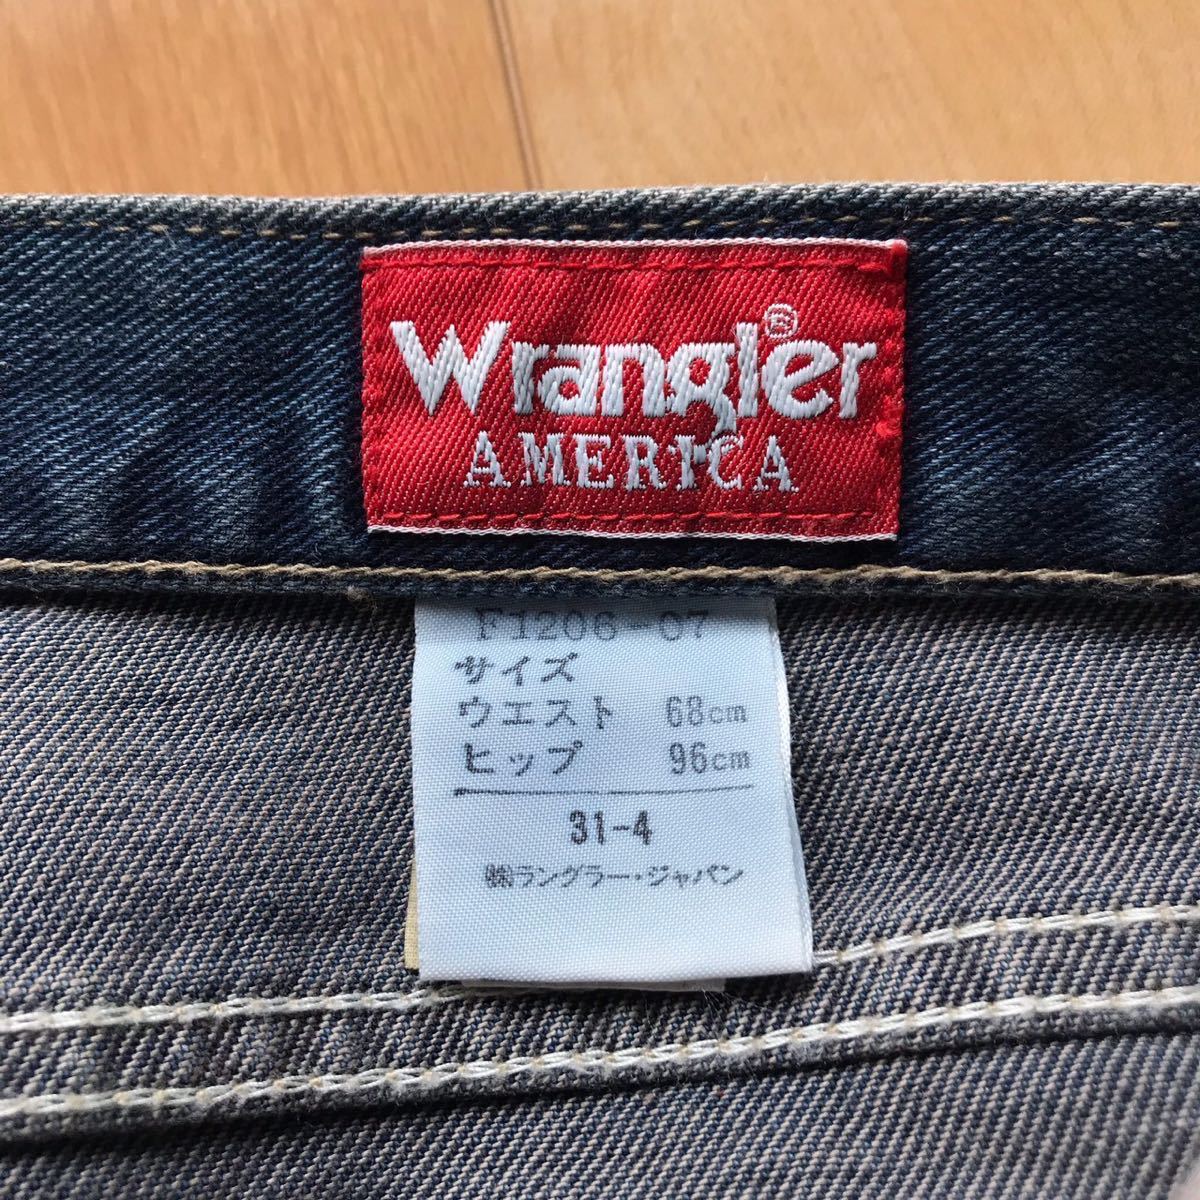  made in Japan Wrangler Denim pants pocket tag 538-1-57 wrangler indigo 